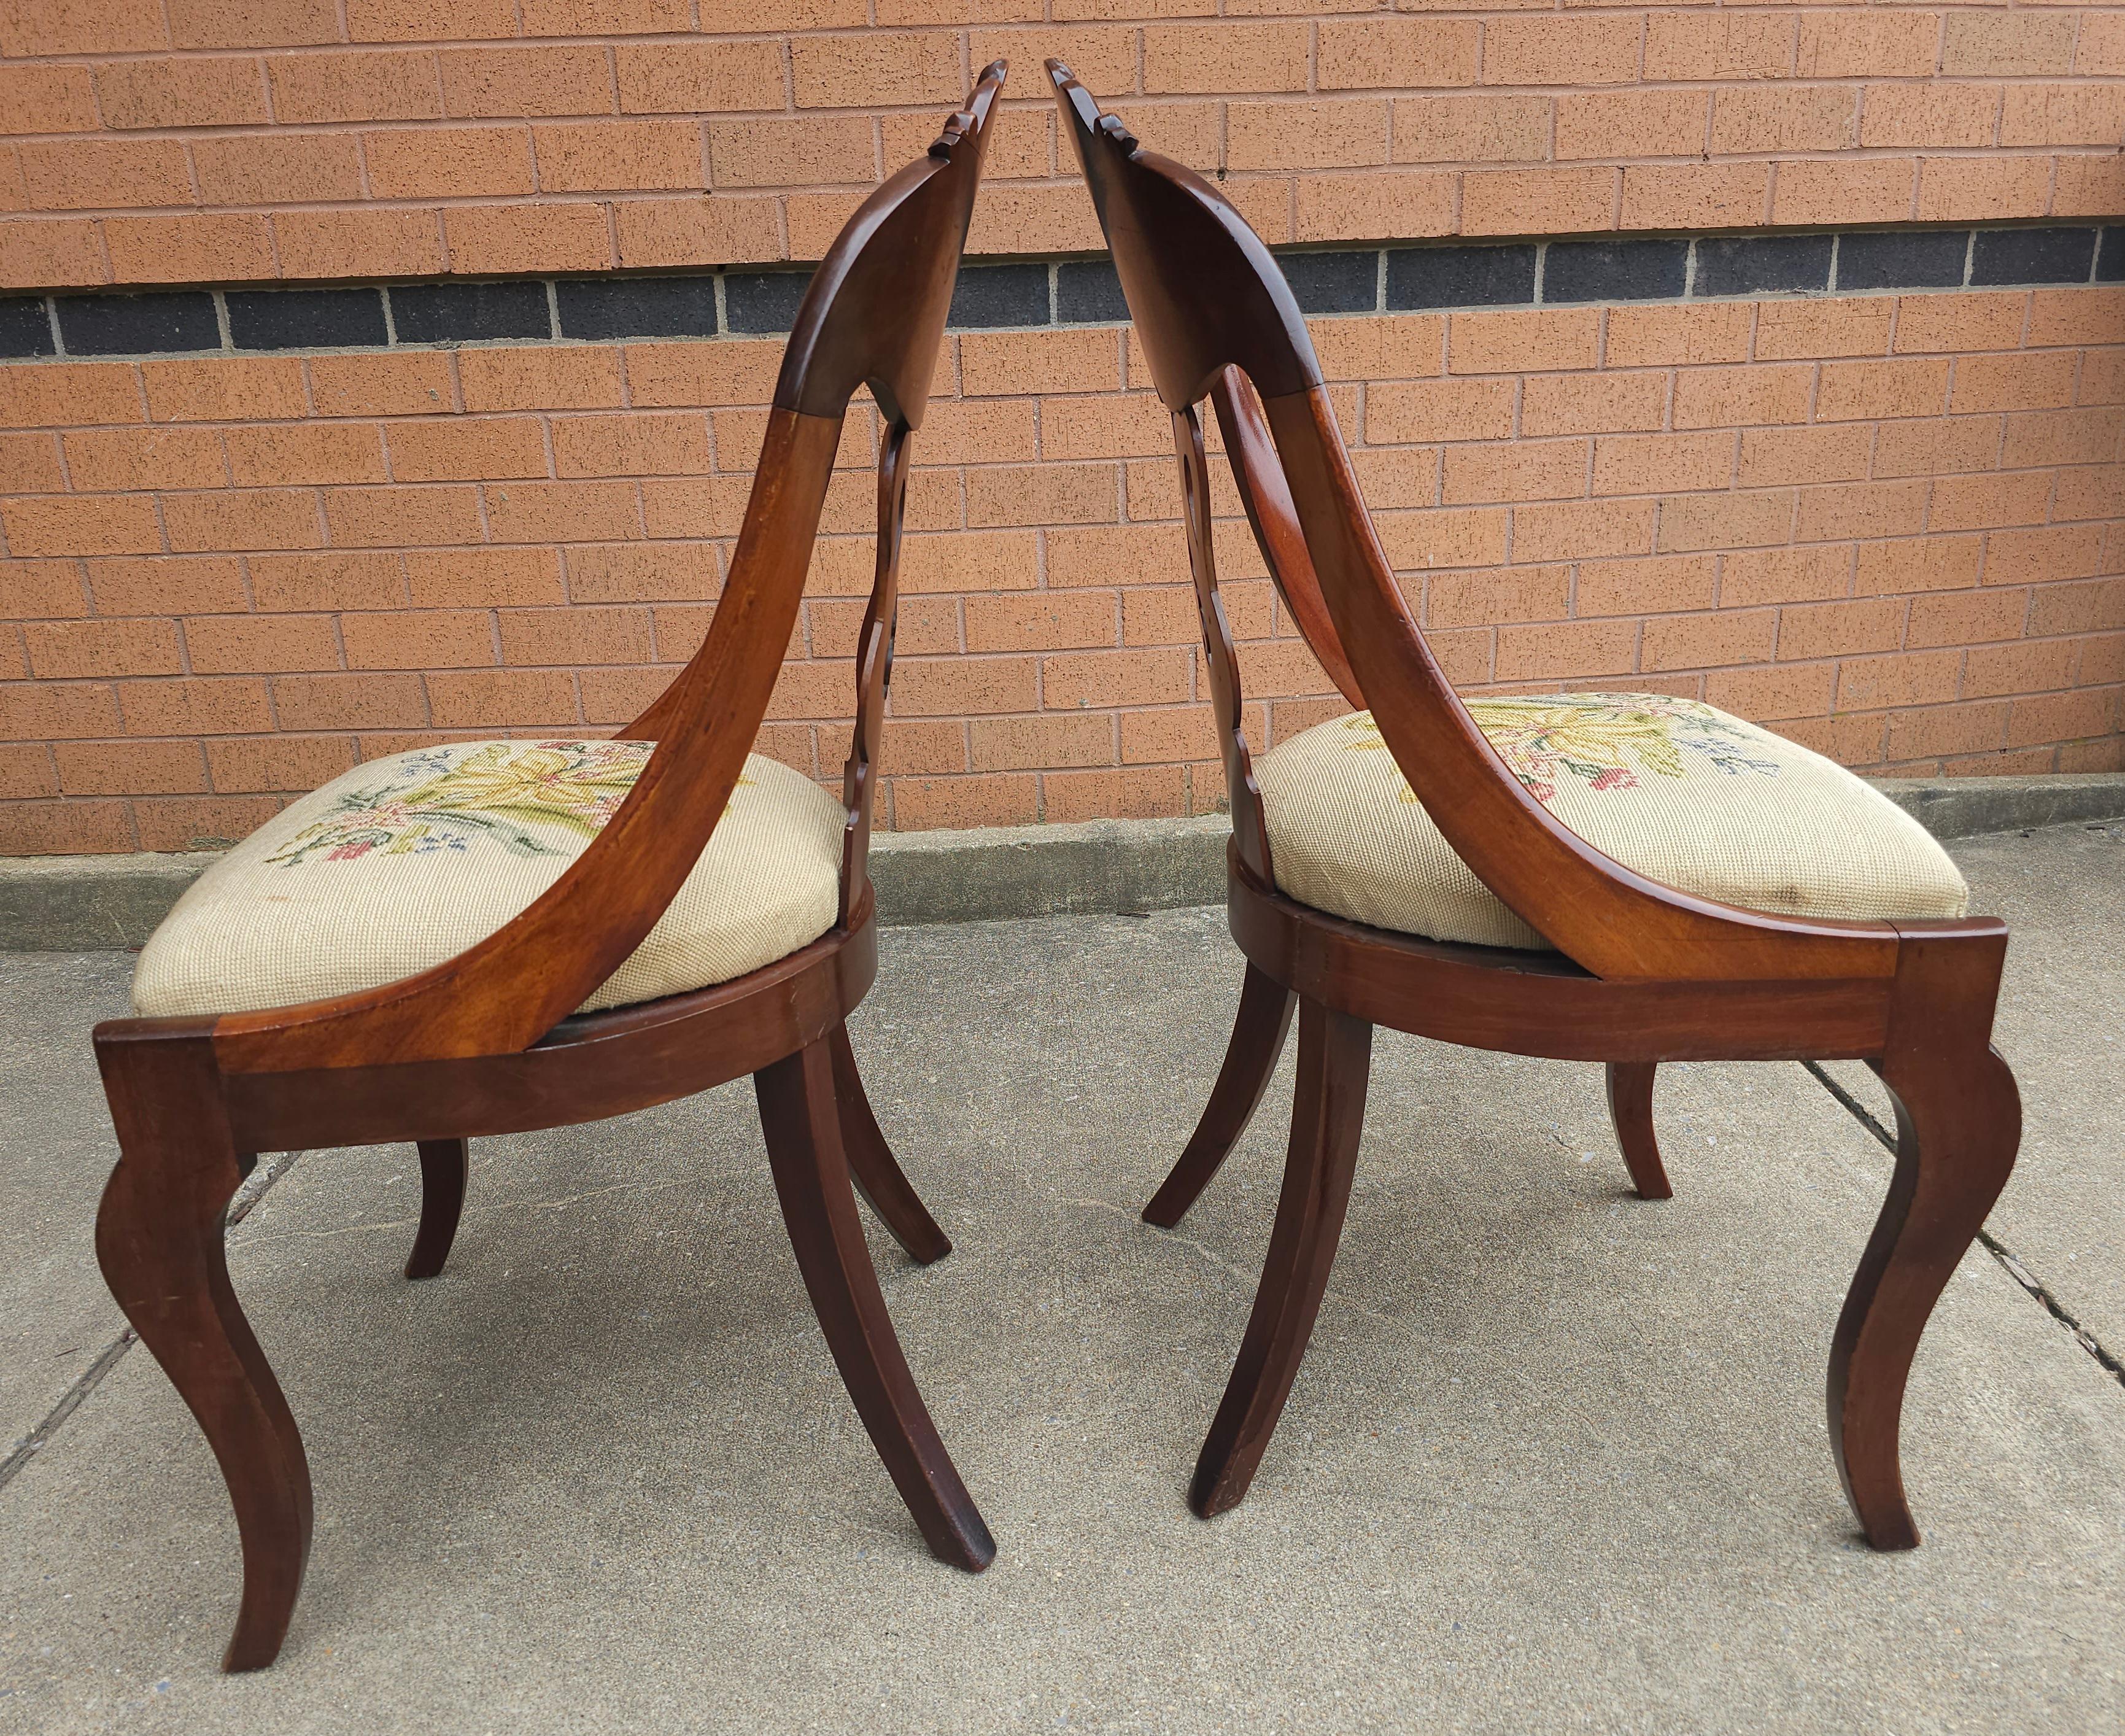 Paire de chaises Empire américaines du 19e siècle, sculptées en magogie et tapissées. Mesure 18,25